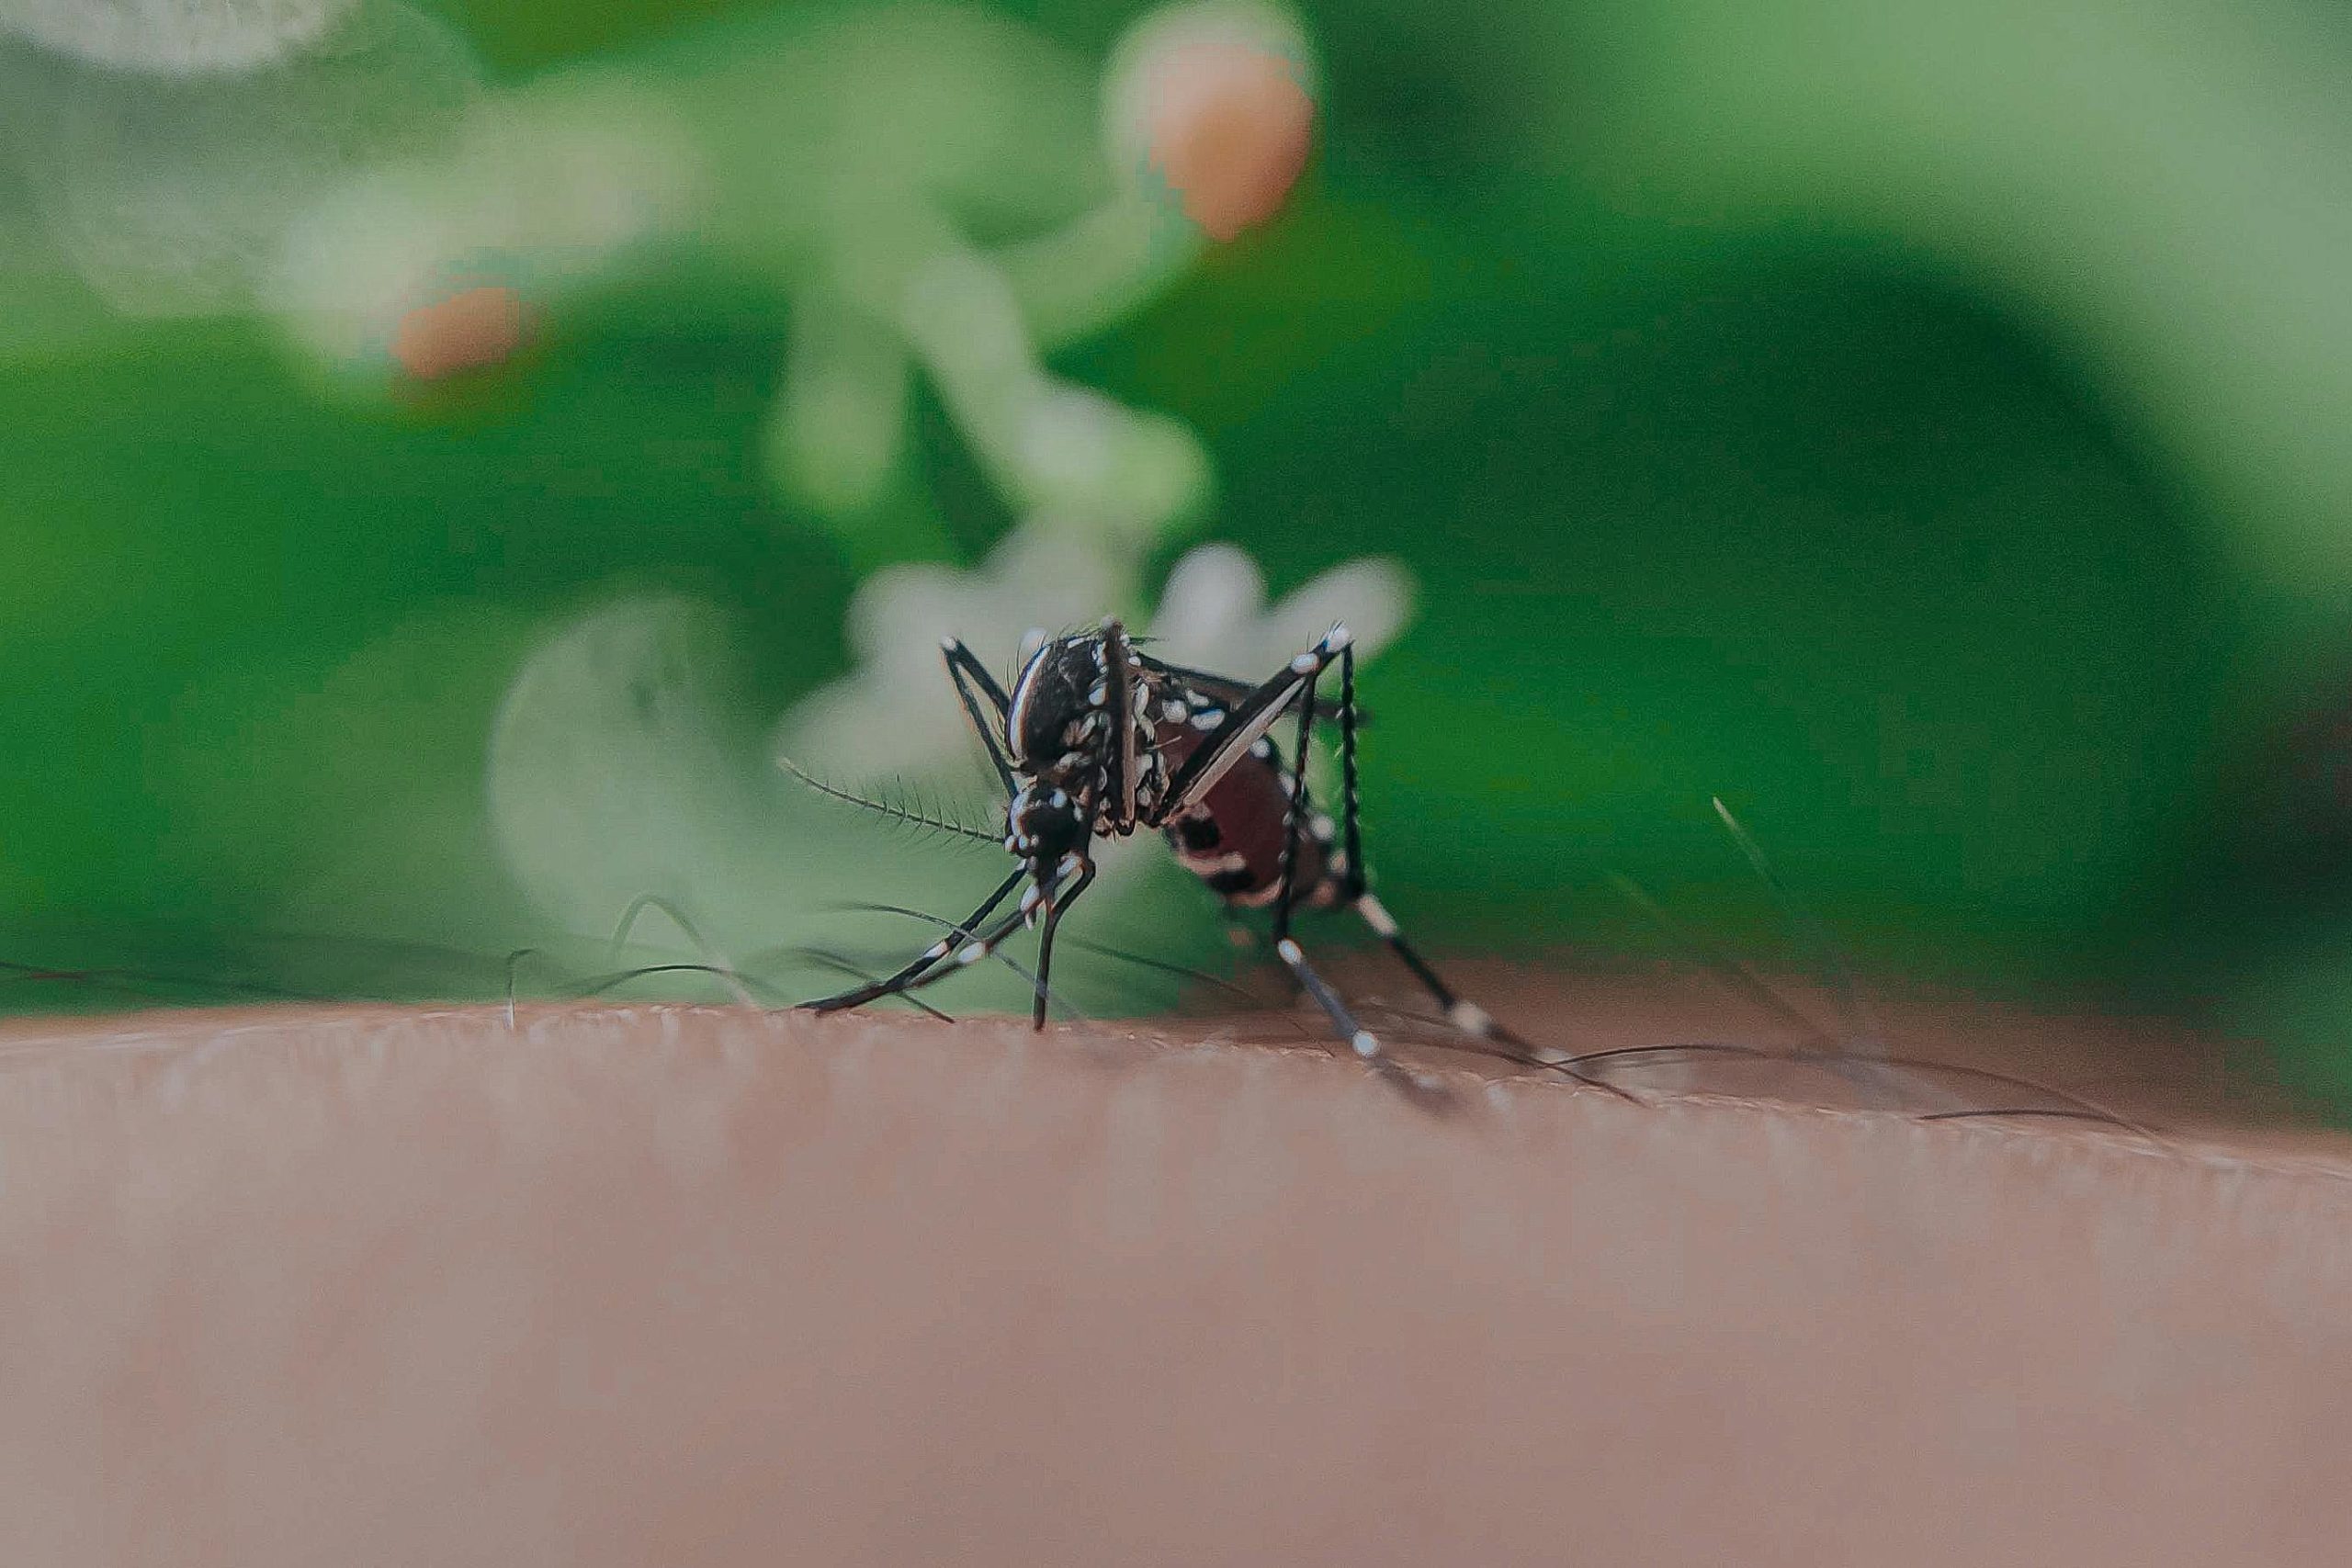 Mosquito del Dengue en Chile: Especialista explica por...<span class="font-thin text-xs"> [Leer más]</span>